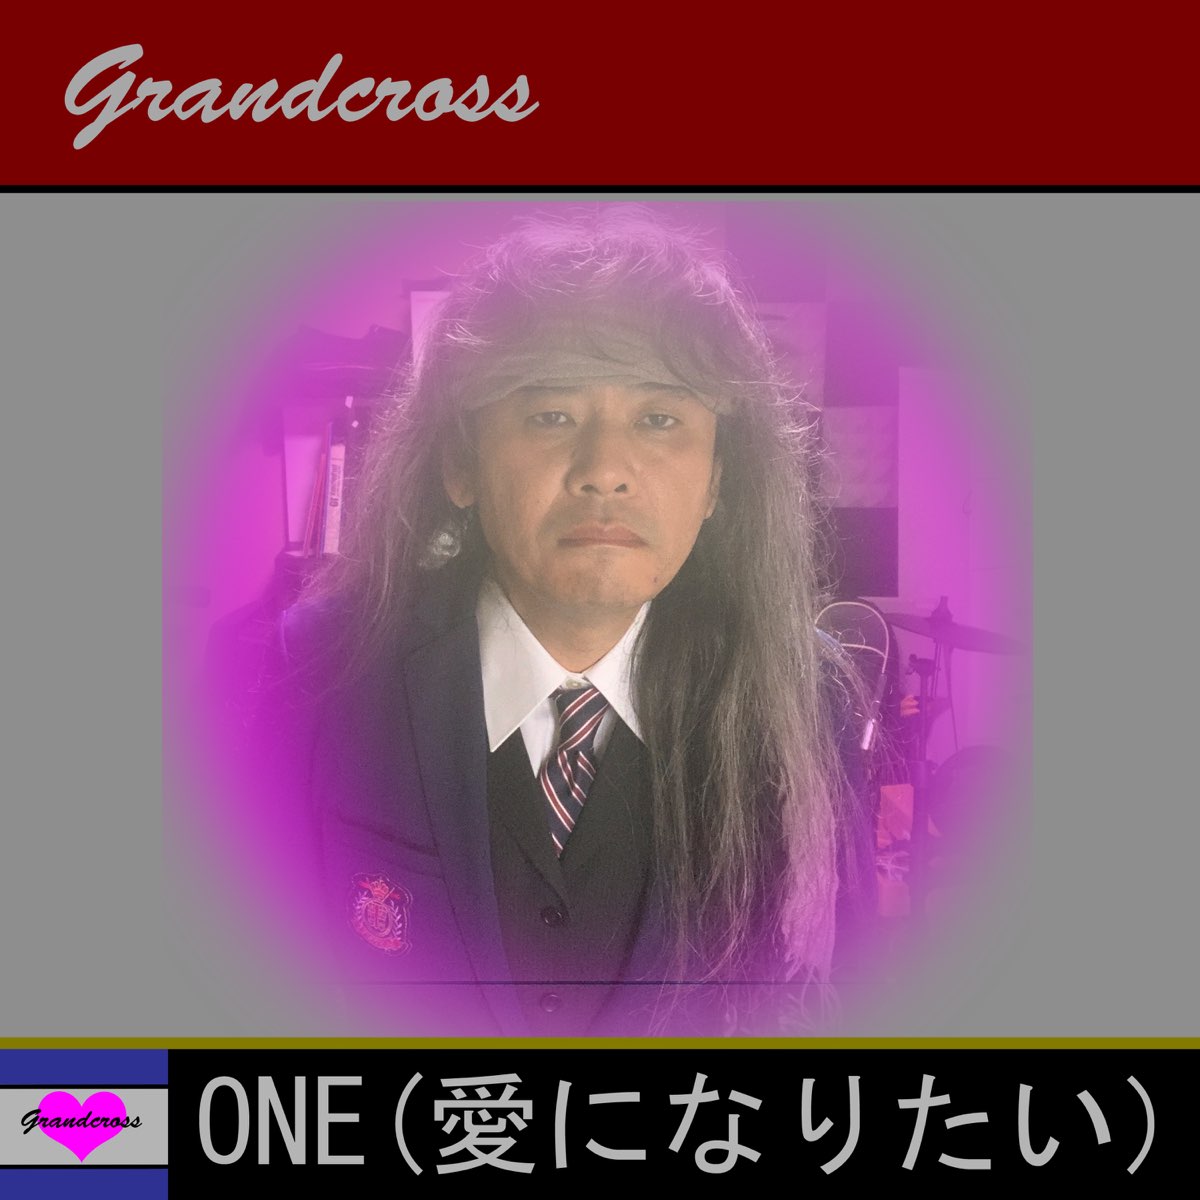 Grandcrossの「ONE(愛になりたい)」